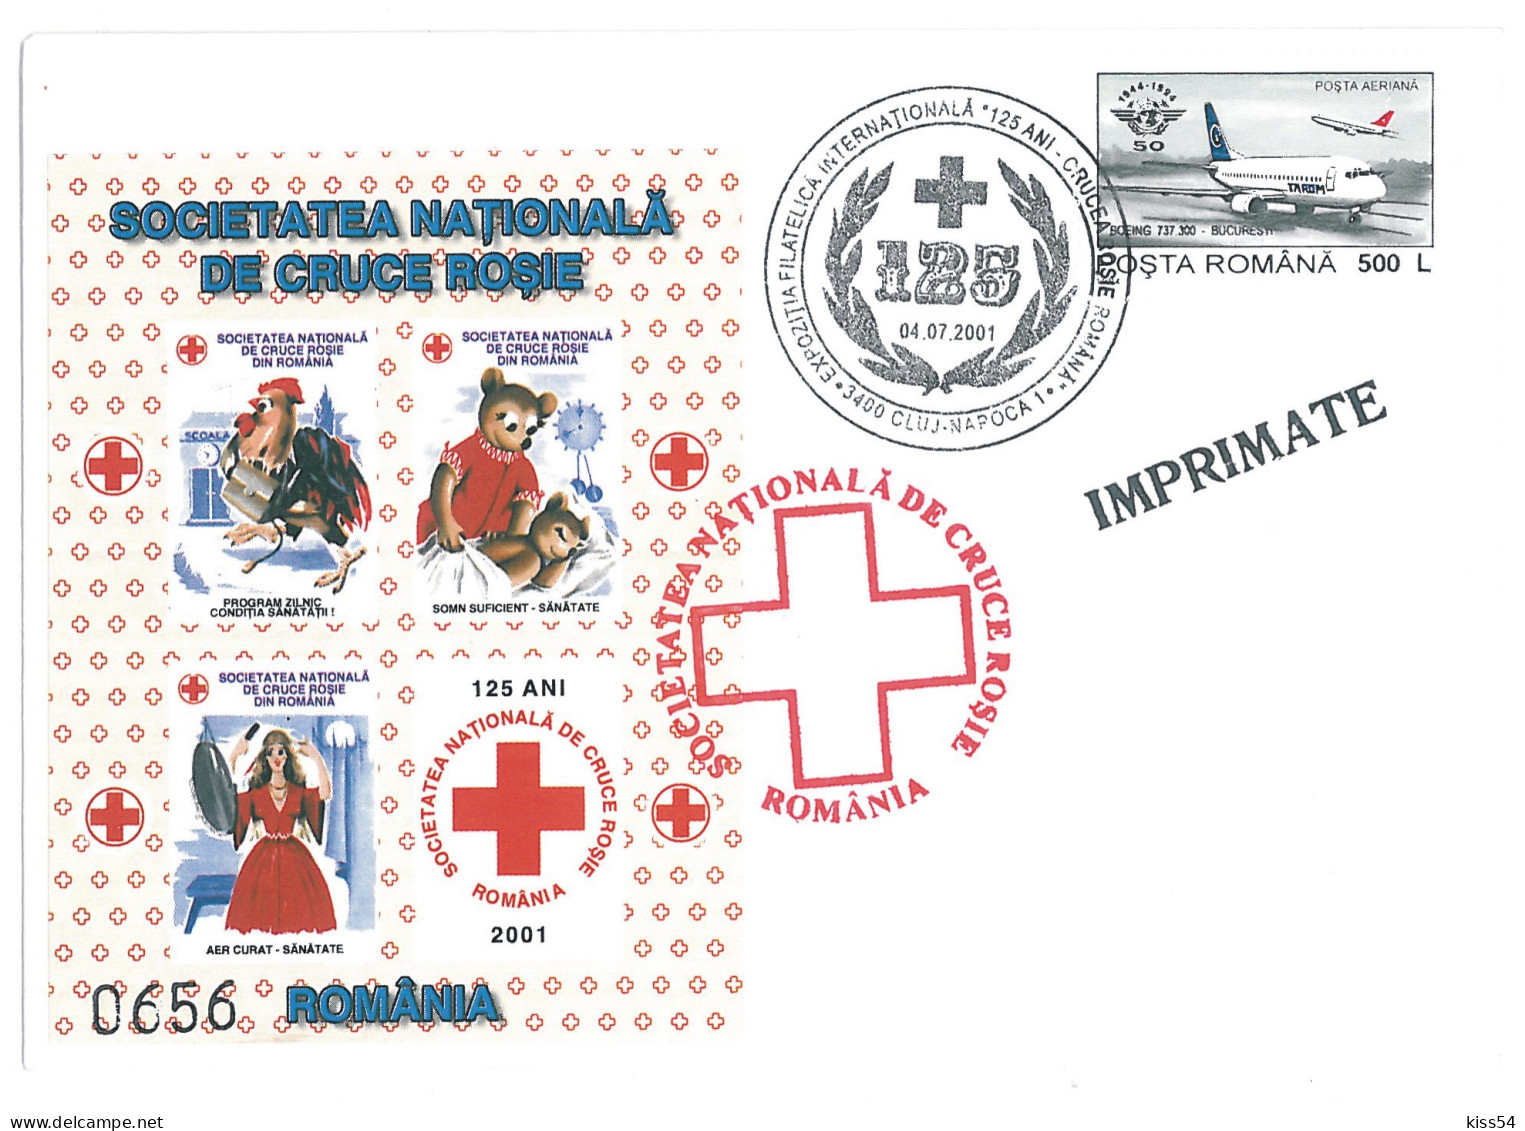 COV 87 - 306 RED CROSS, Romania - Cover - Used - 2005 - Maximumkarten (MC)